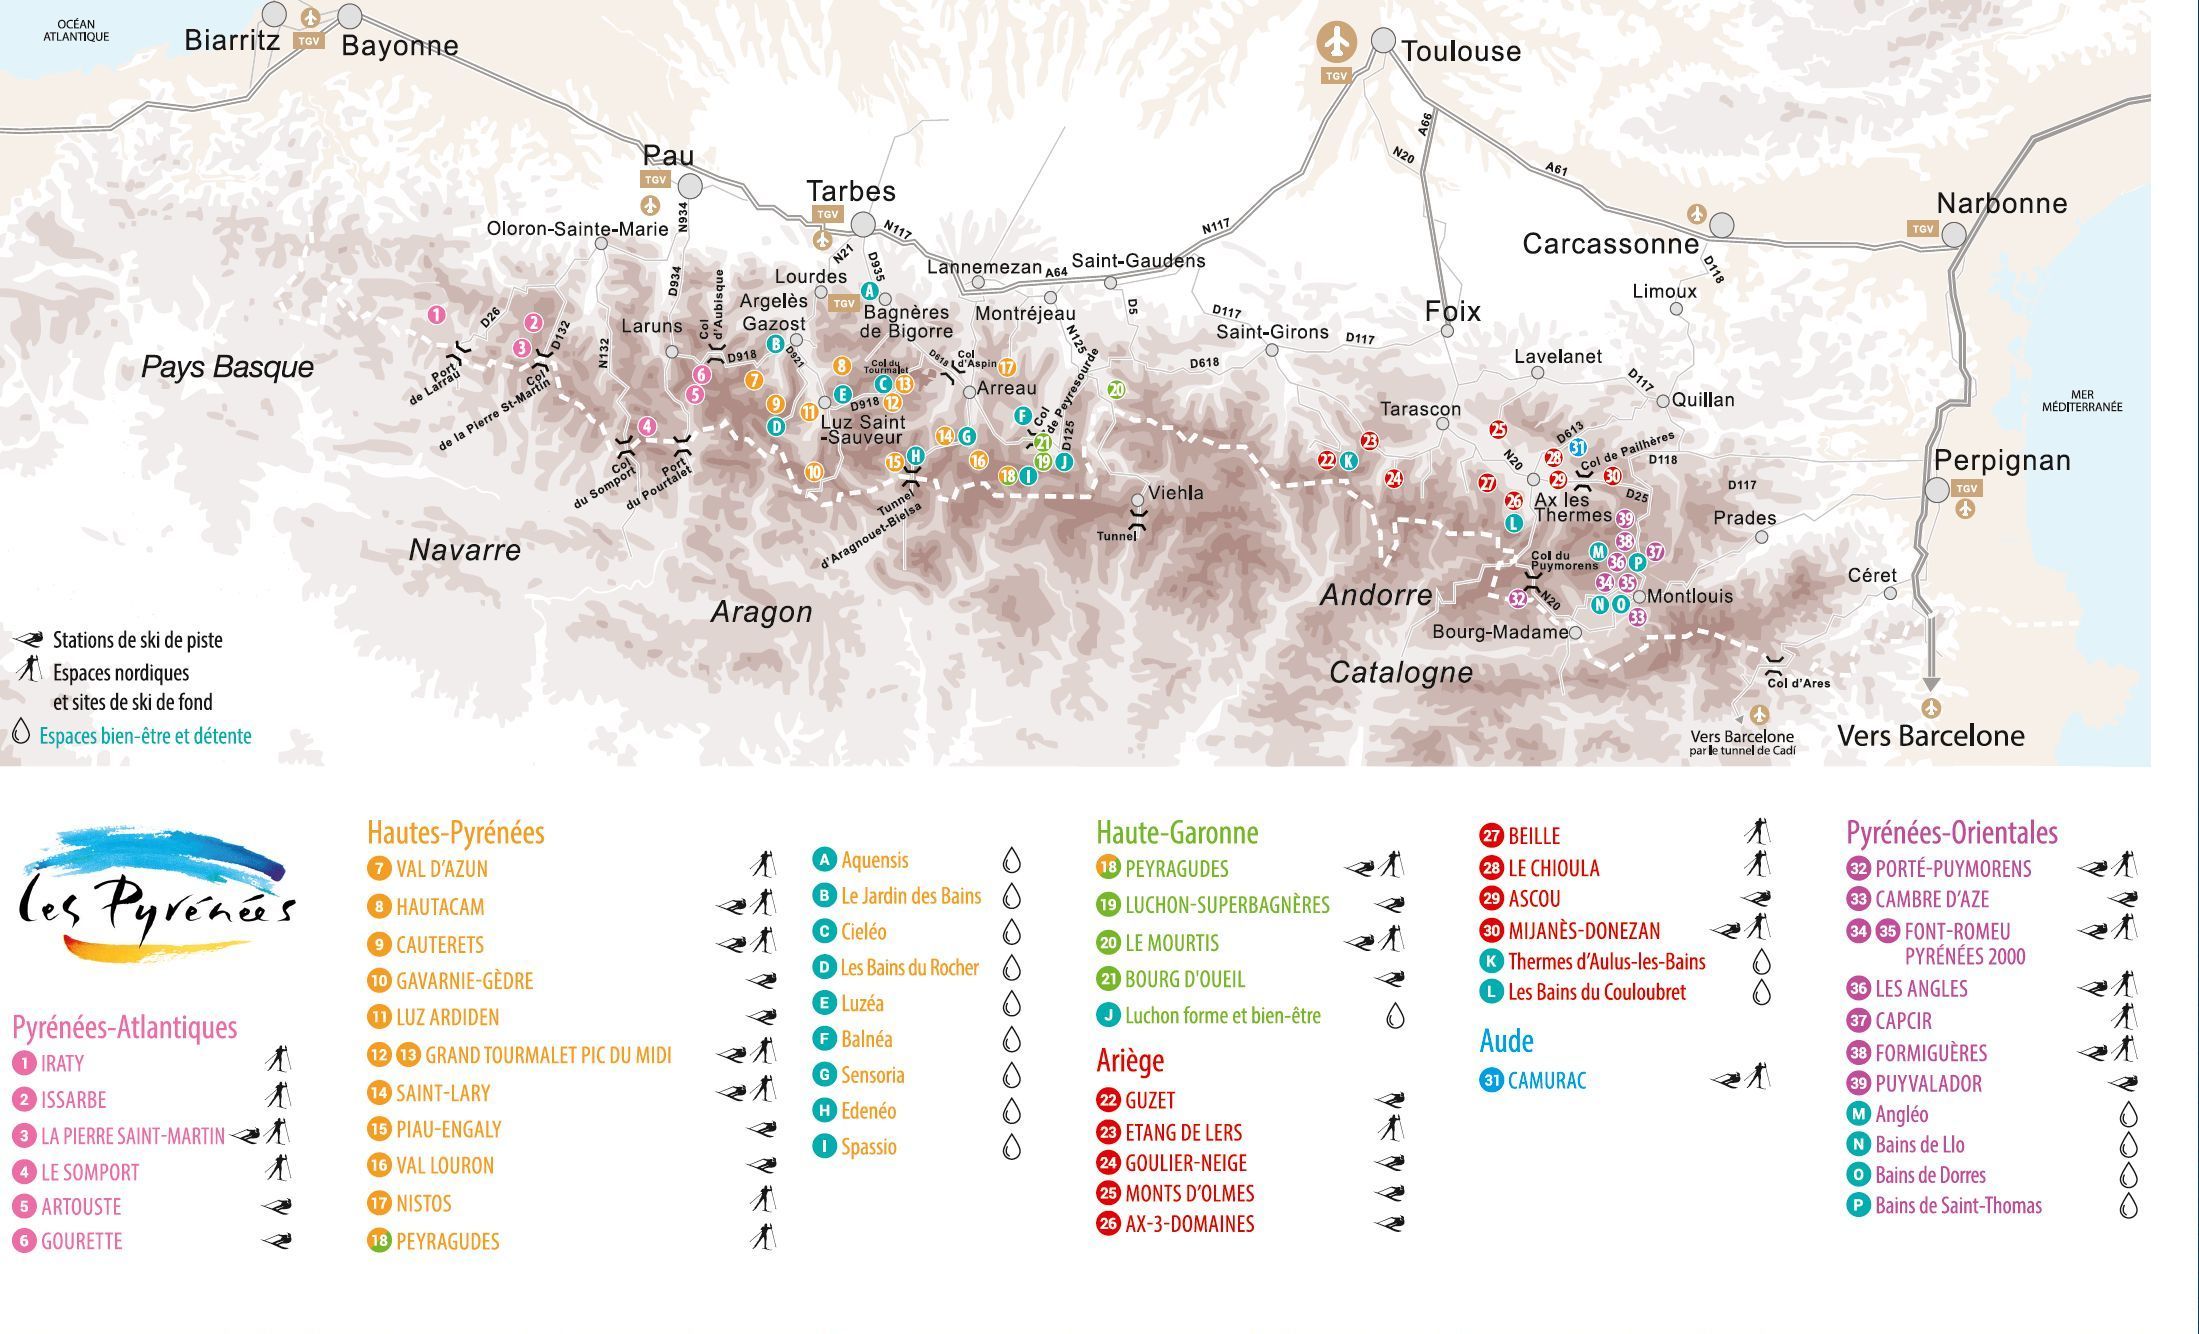 Mapa con todas las estaciones de esquí del Pirineo de Francia